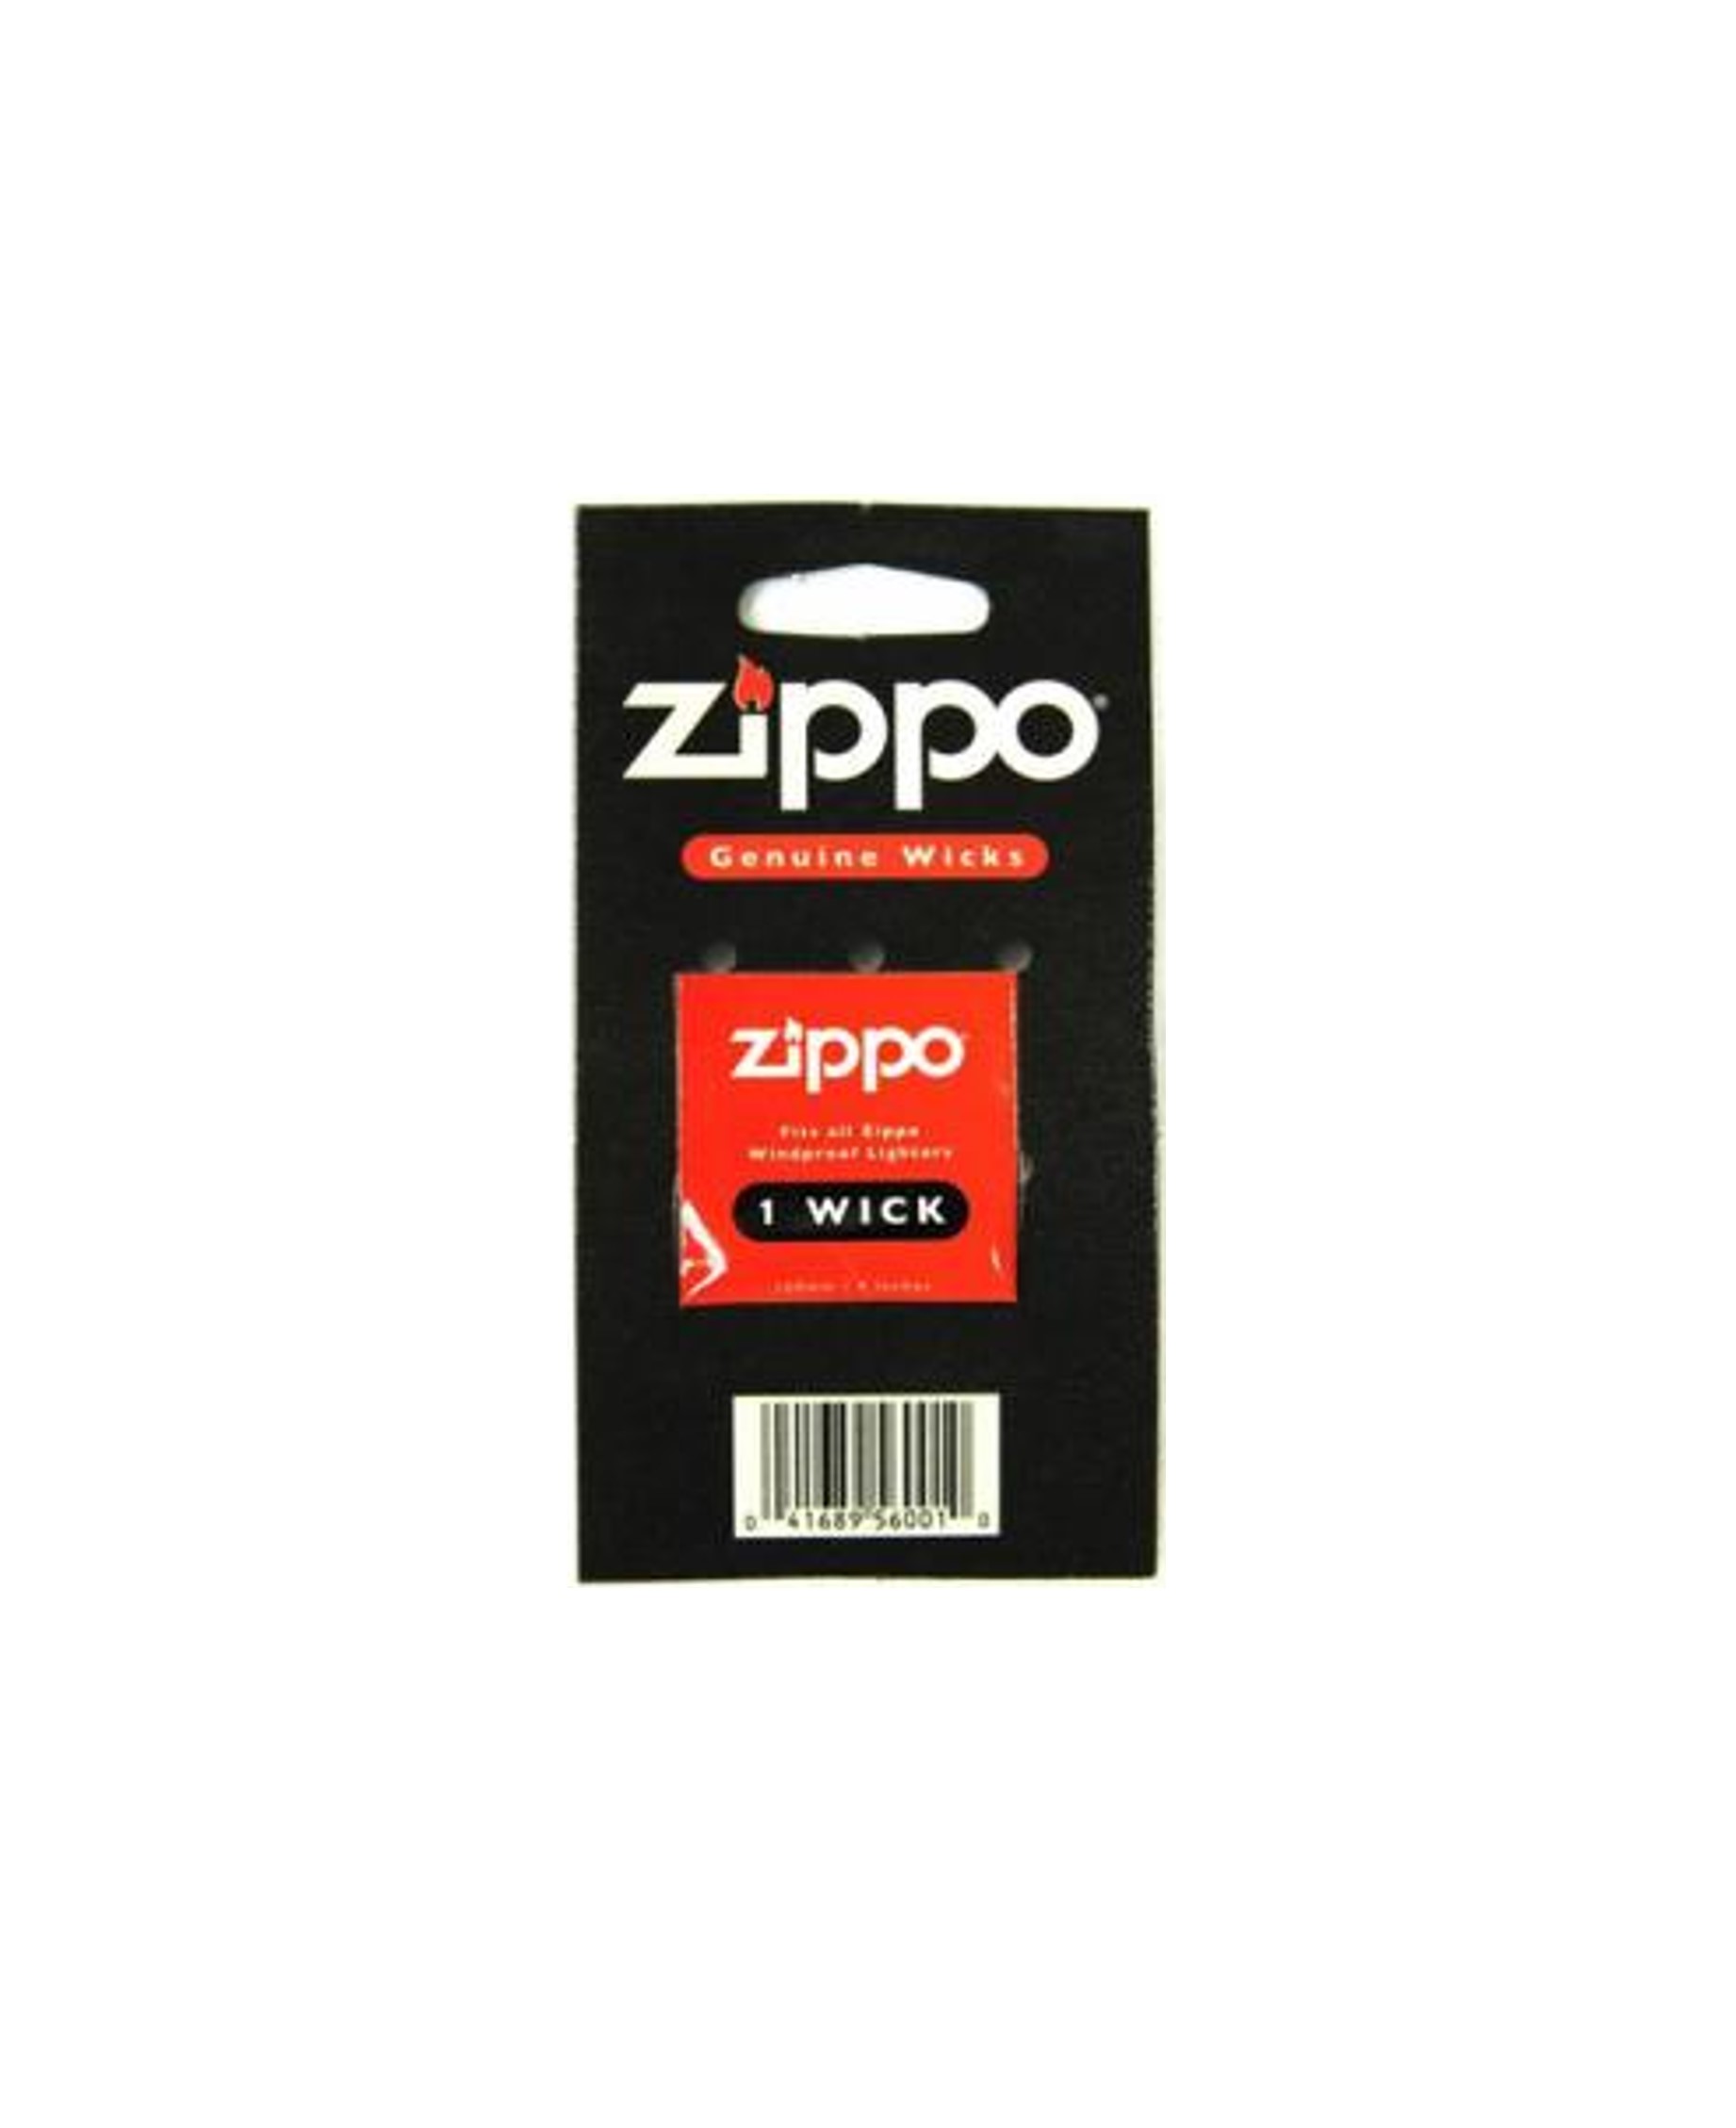 Zippo_Genuine_Wicks_Docht_f_r_Zippo_Feuerzeuge